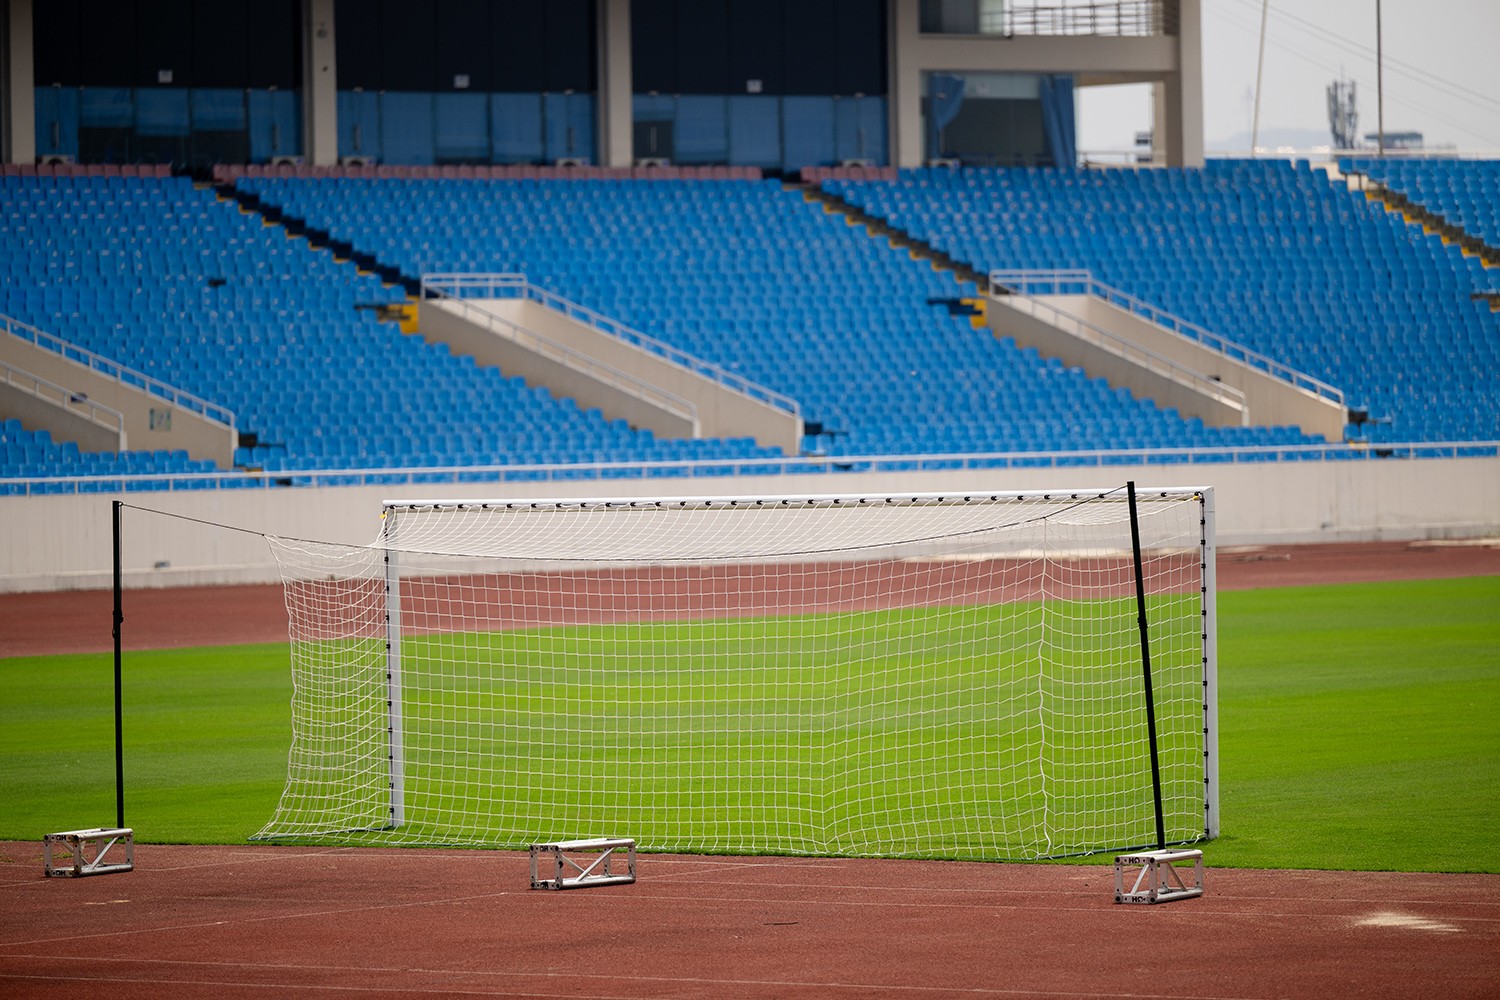 Hiện tại, mặt sân đã khá tốt, cỏ xanh, có thể đáp ứng được việc thi đấu của 2 đội. Khán giả Việt Nam mong chờ đội chủ nhà sẽ lật ngược thế cờ, giành chiến thắng trên sân nhà.